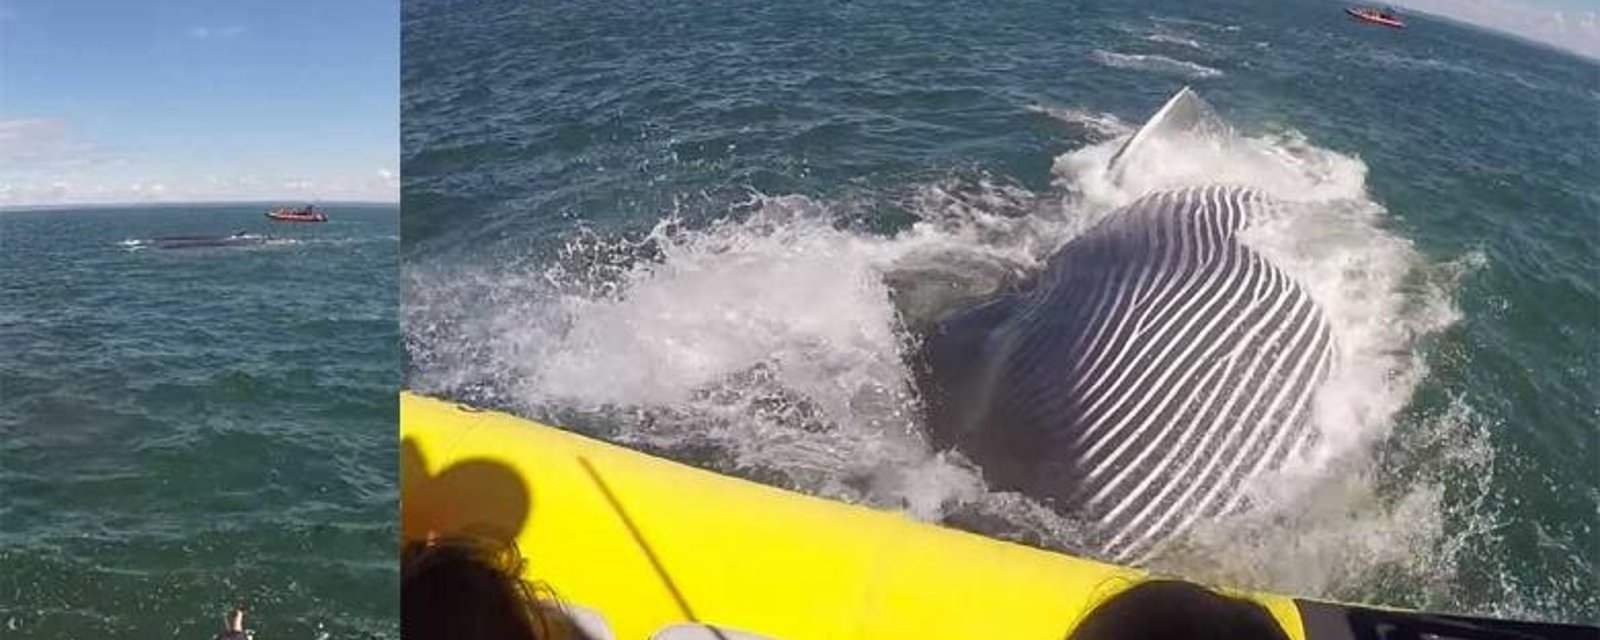 Une baleine provoque la terreur de touristes français sur le fleuve St-Laurent!